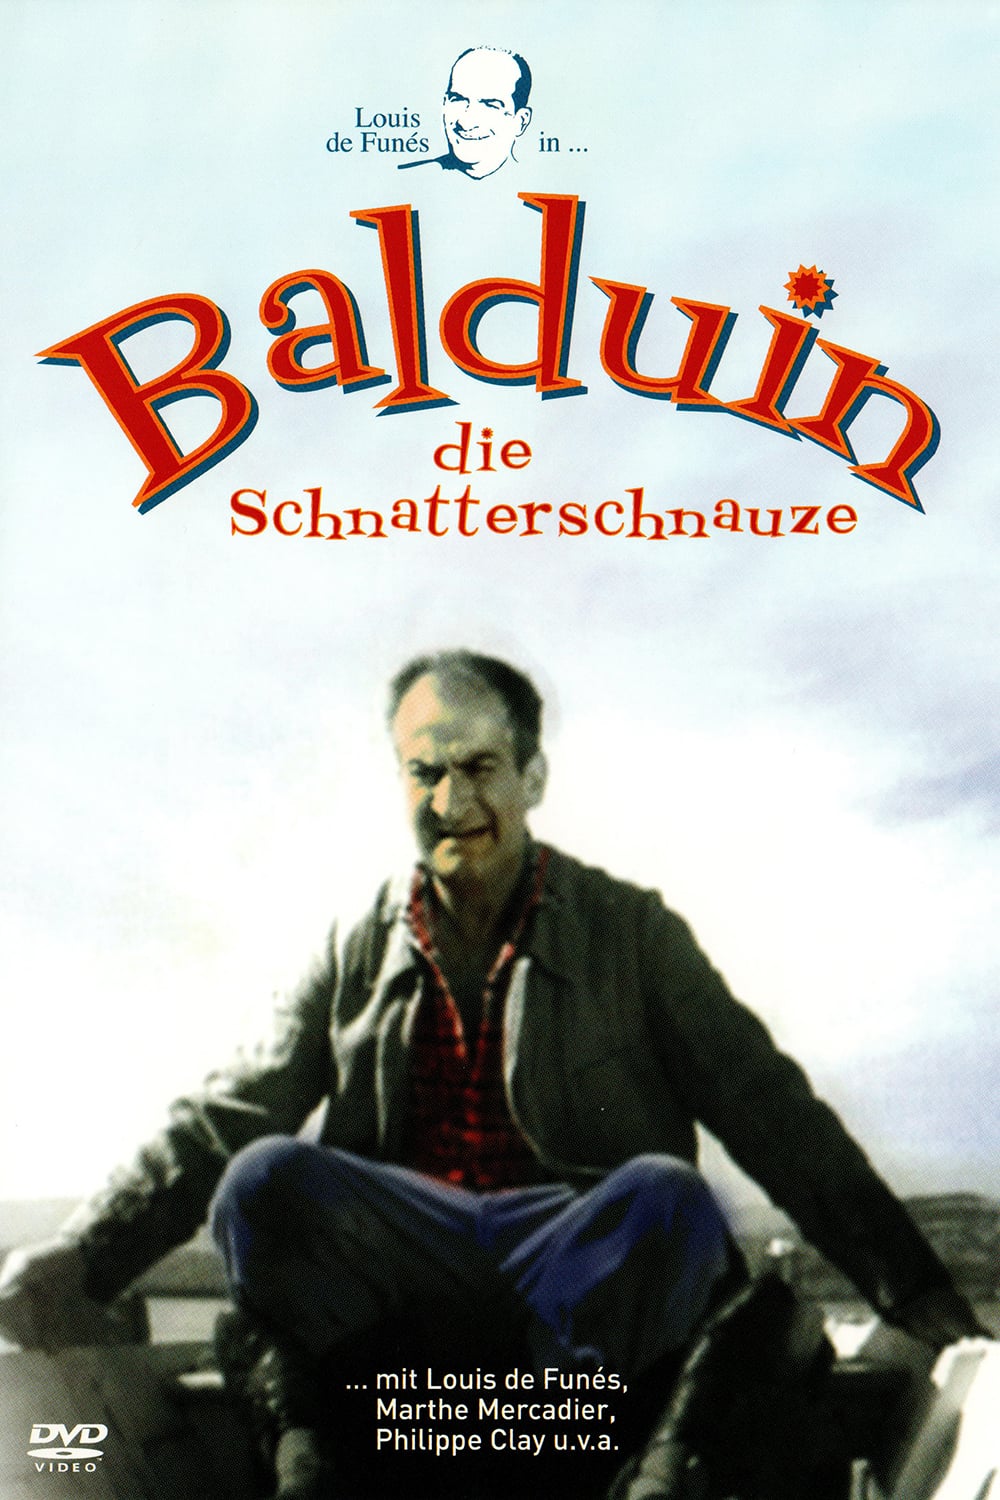 Plakat von "Balduin, die Schnatterschnauze"